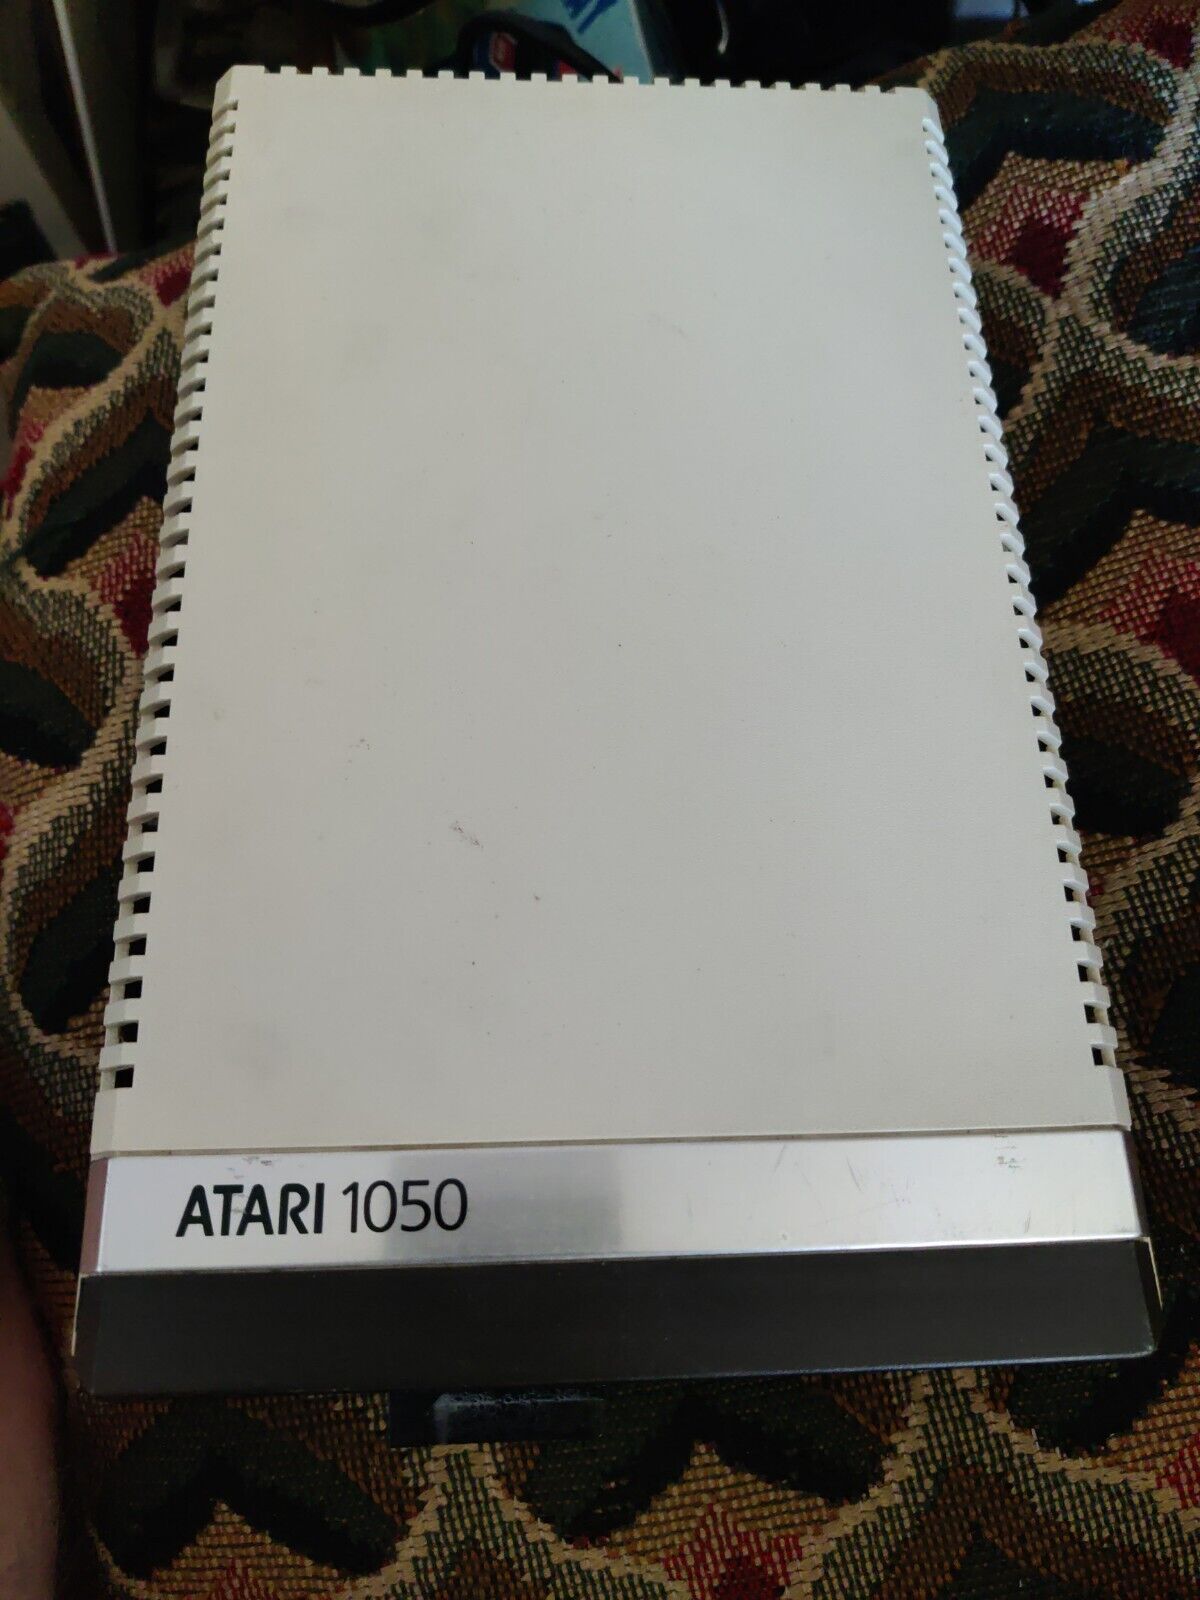 Atari 1050 disk drive,